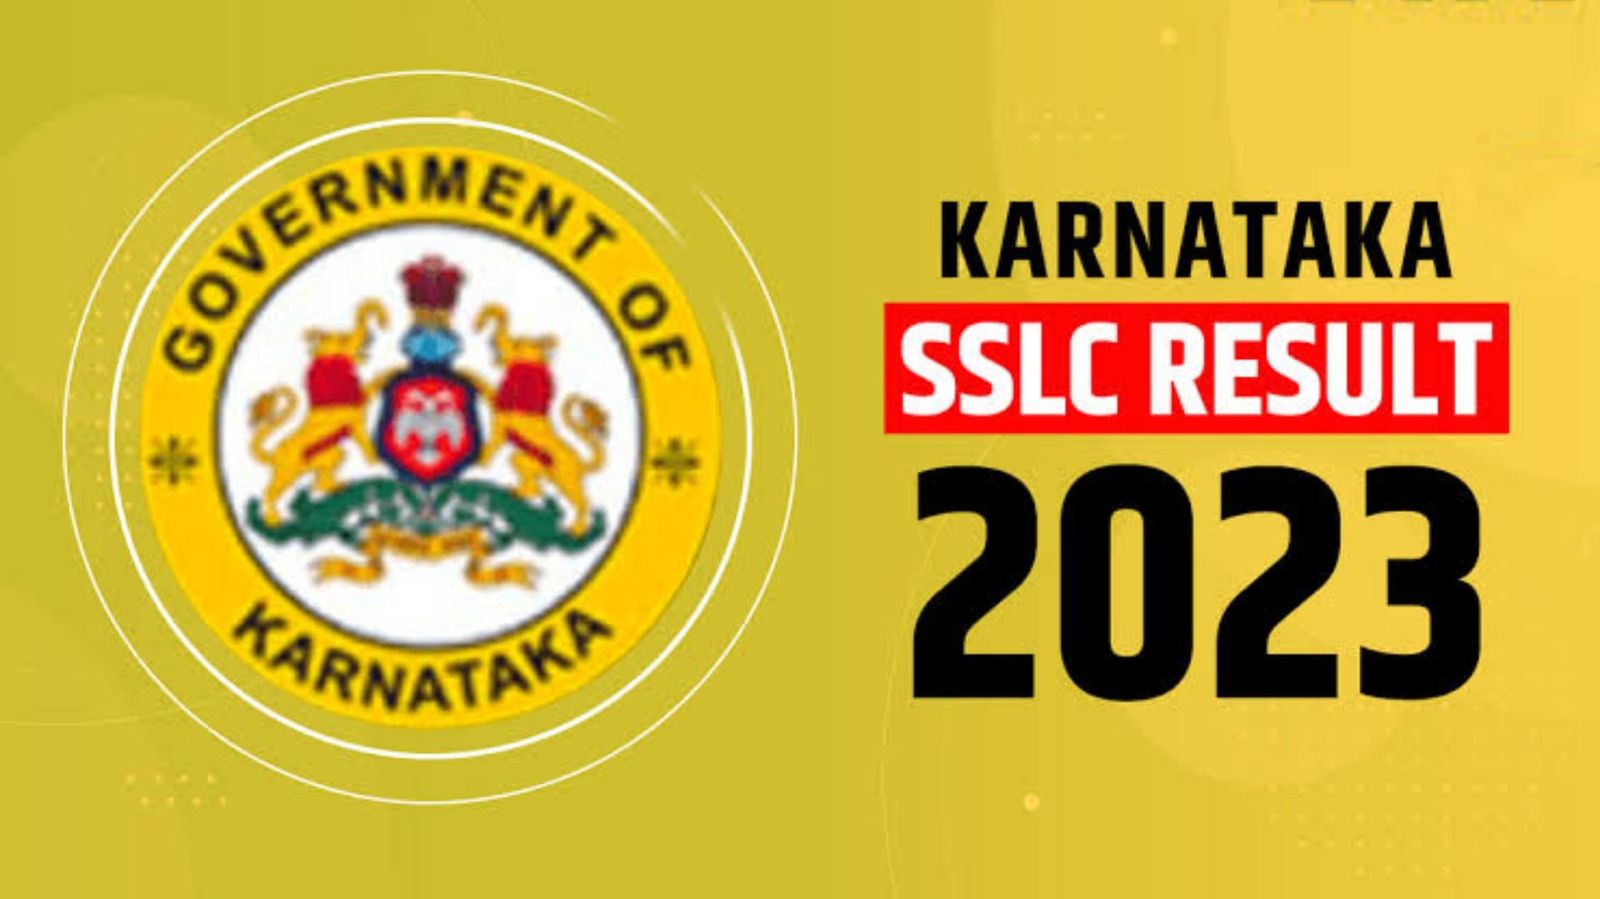 Sslc Result 2023 Karnataka Karnataka Govt Jobs